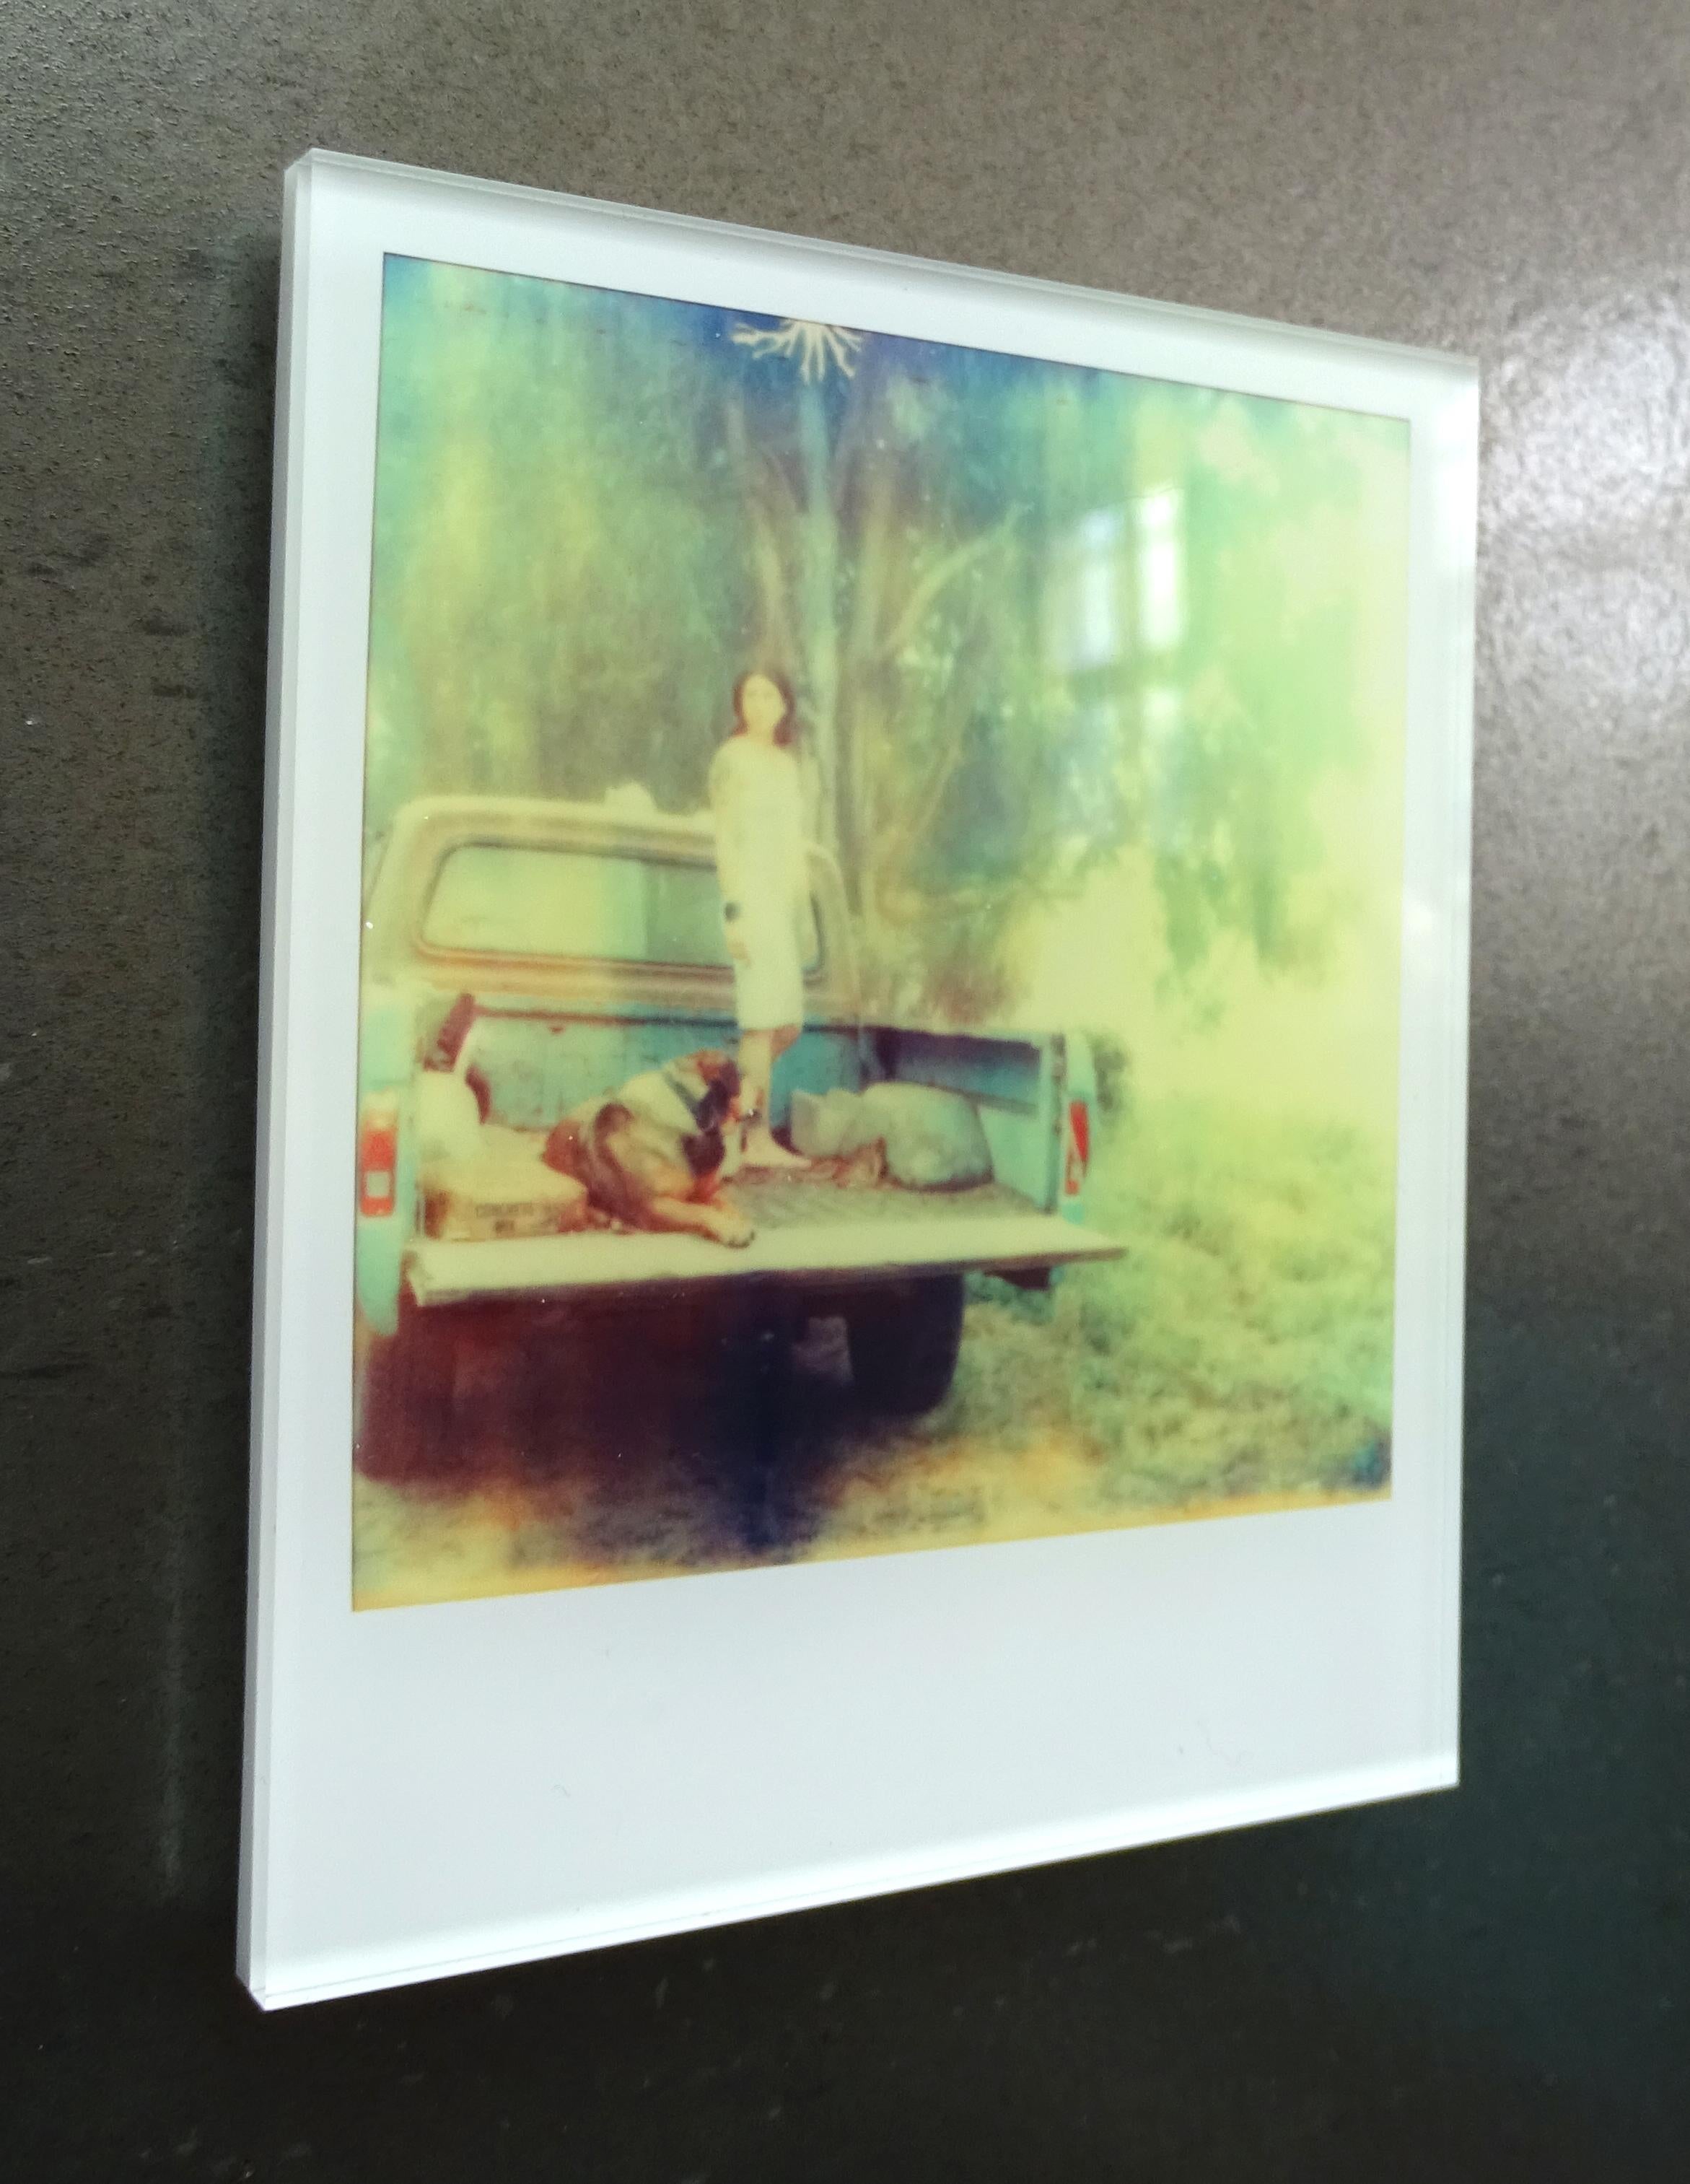 Stefanie Schneider Minis - Saigon (Stranger than Paradise) - based on a Polaroid 1